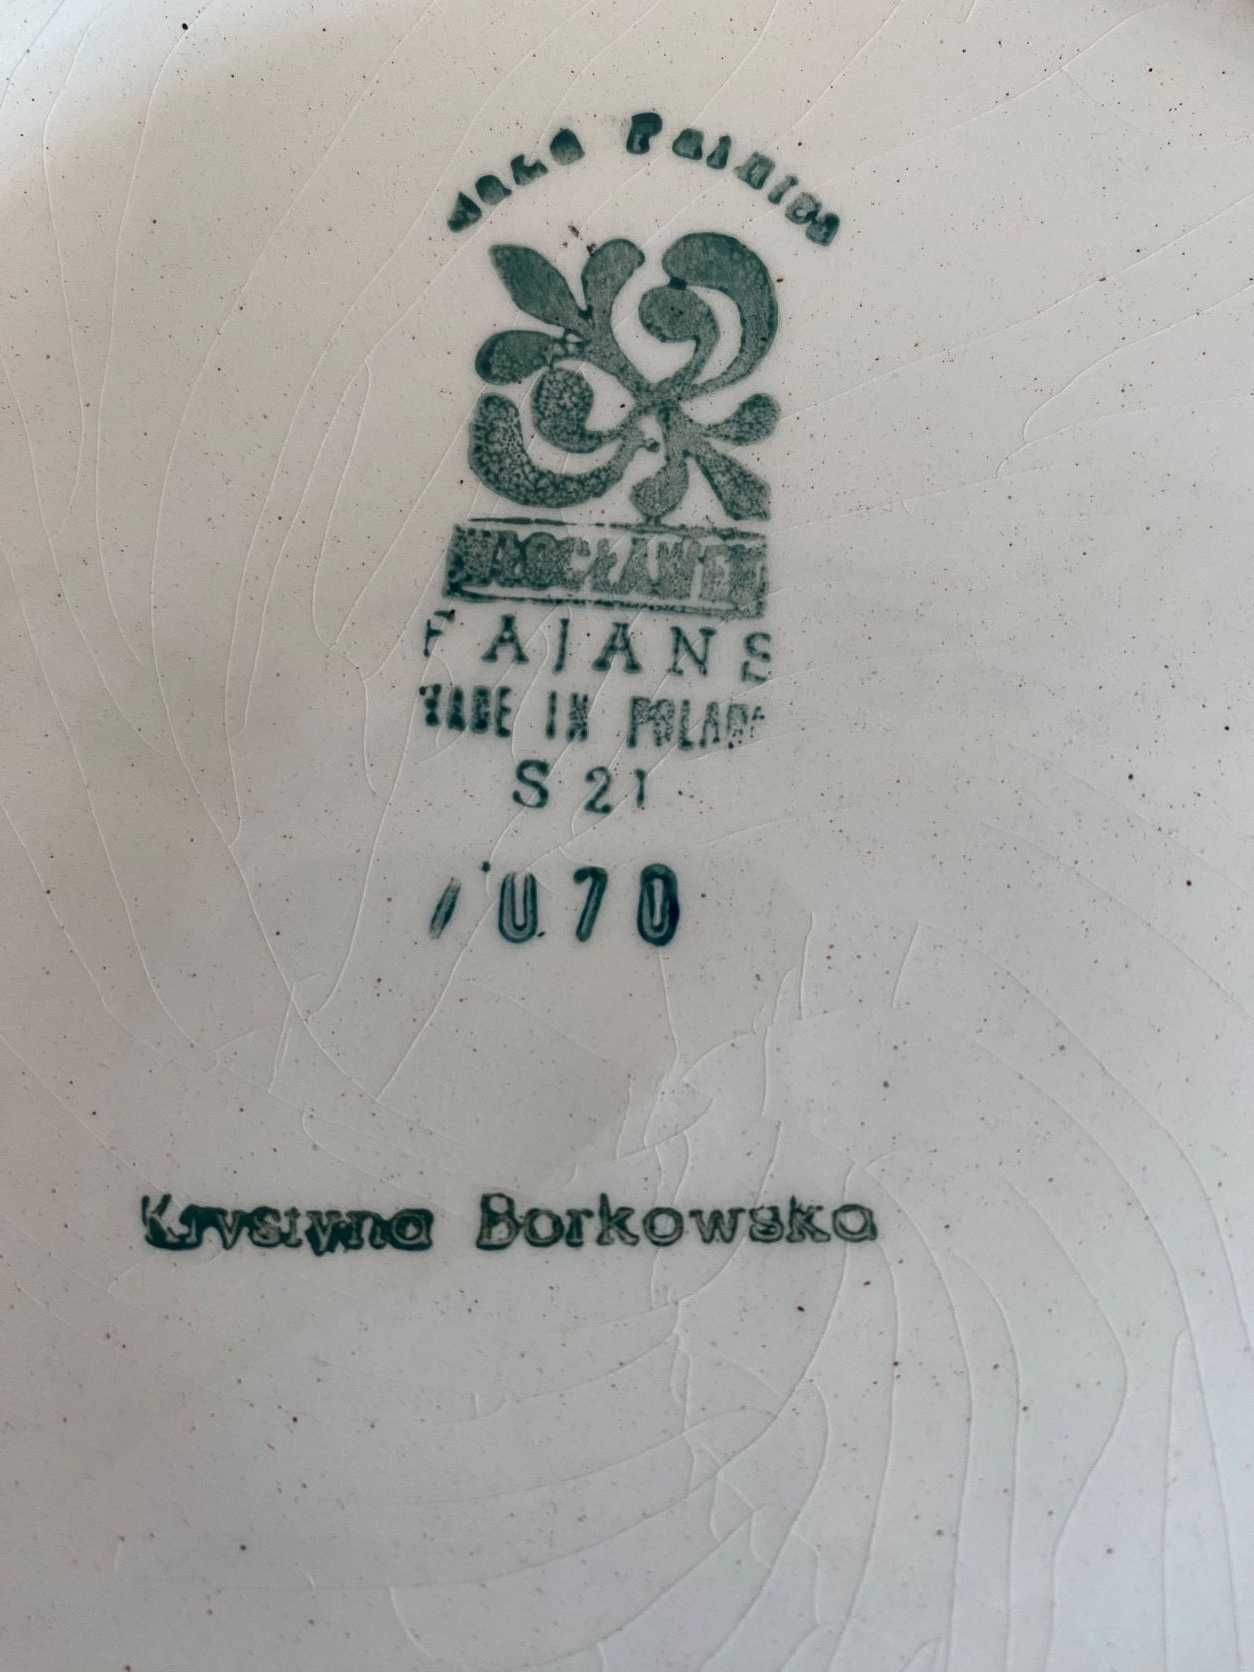 Talerz dekoracyjny fajans ręcznie malowany Włocławek z PRL